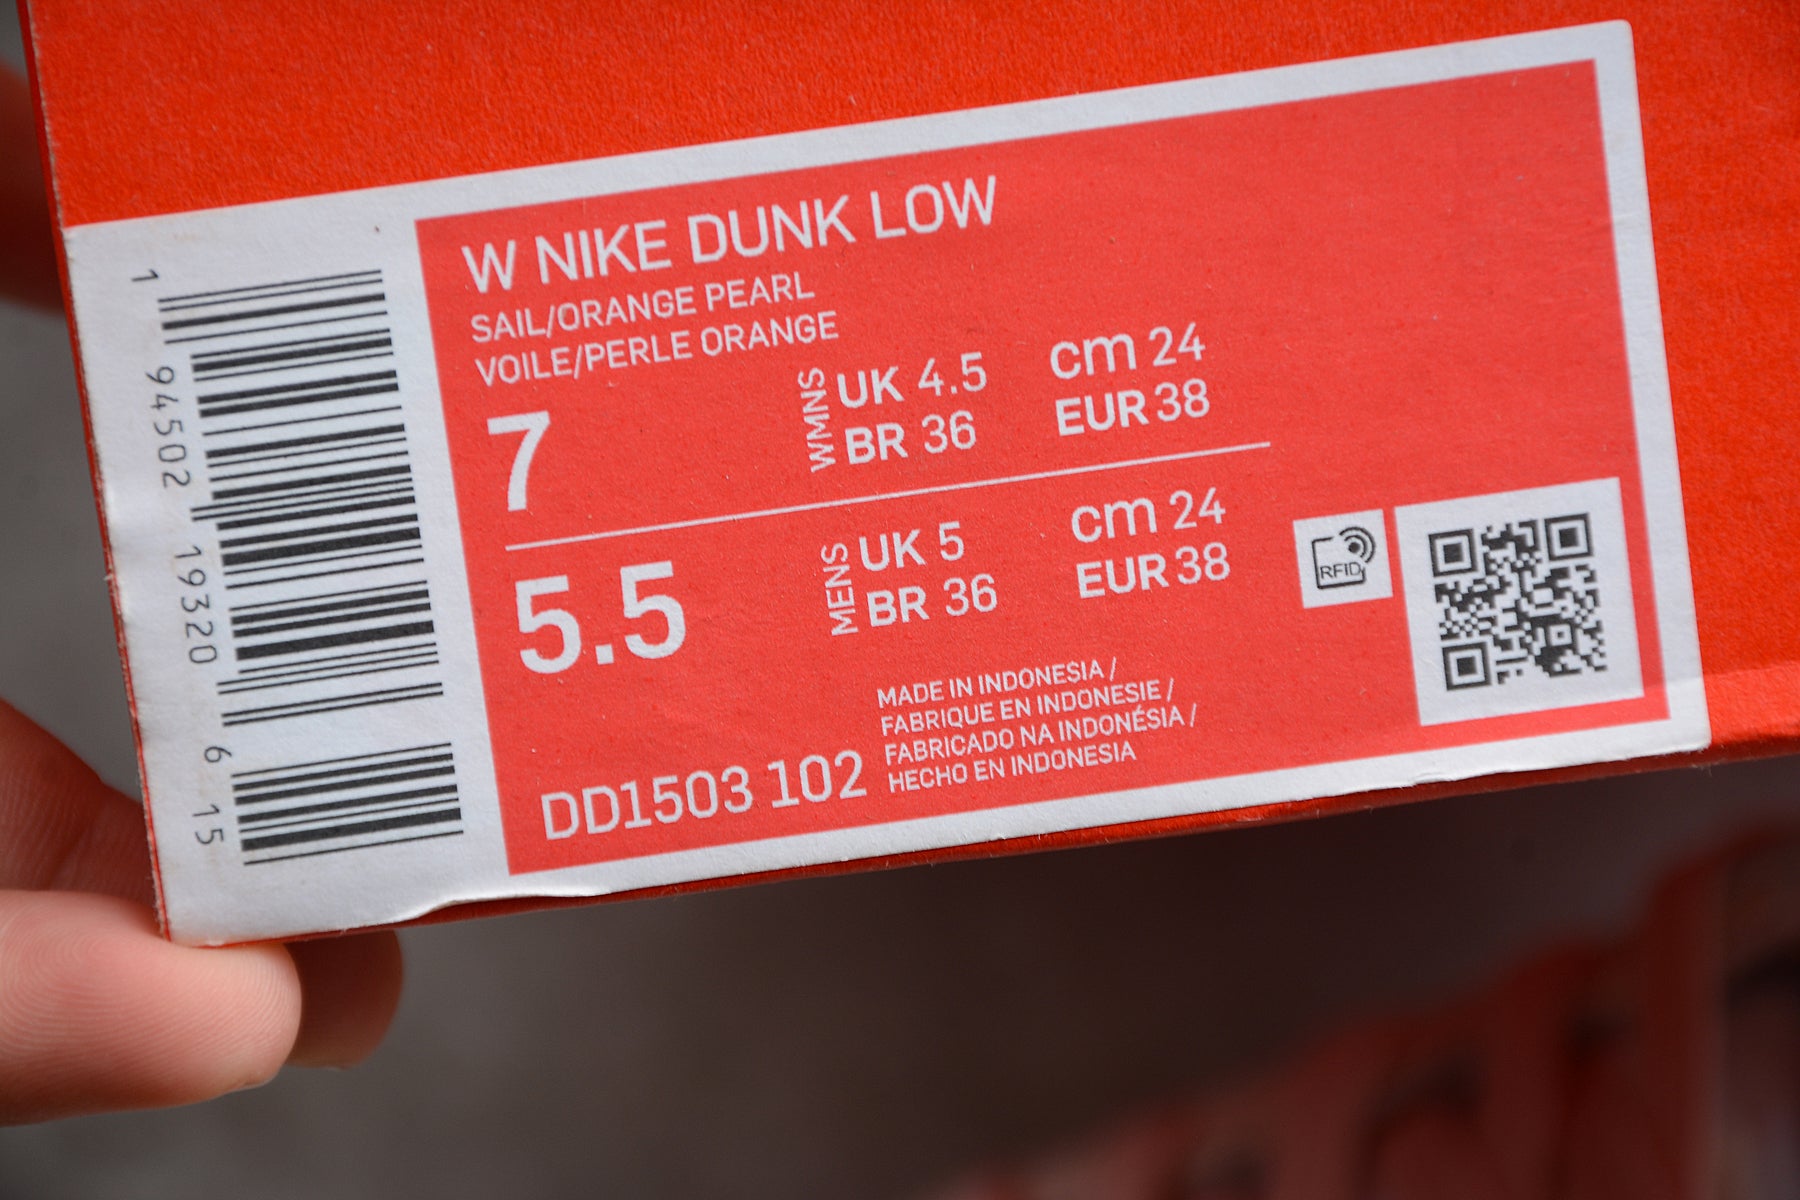 NikeWMNS Dunk Low - Orange Pearl